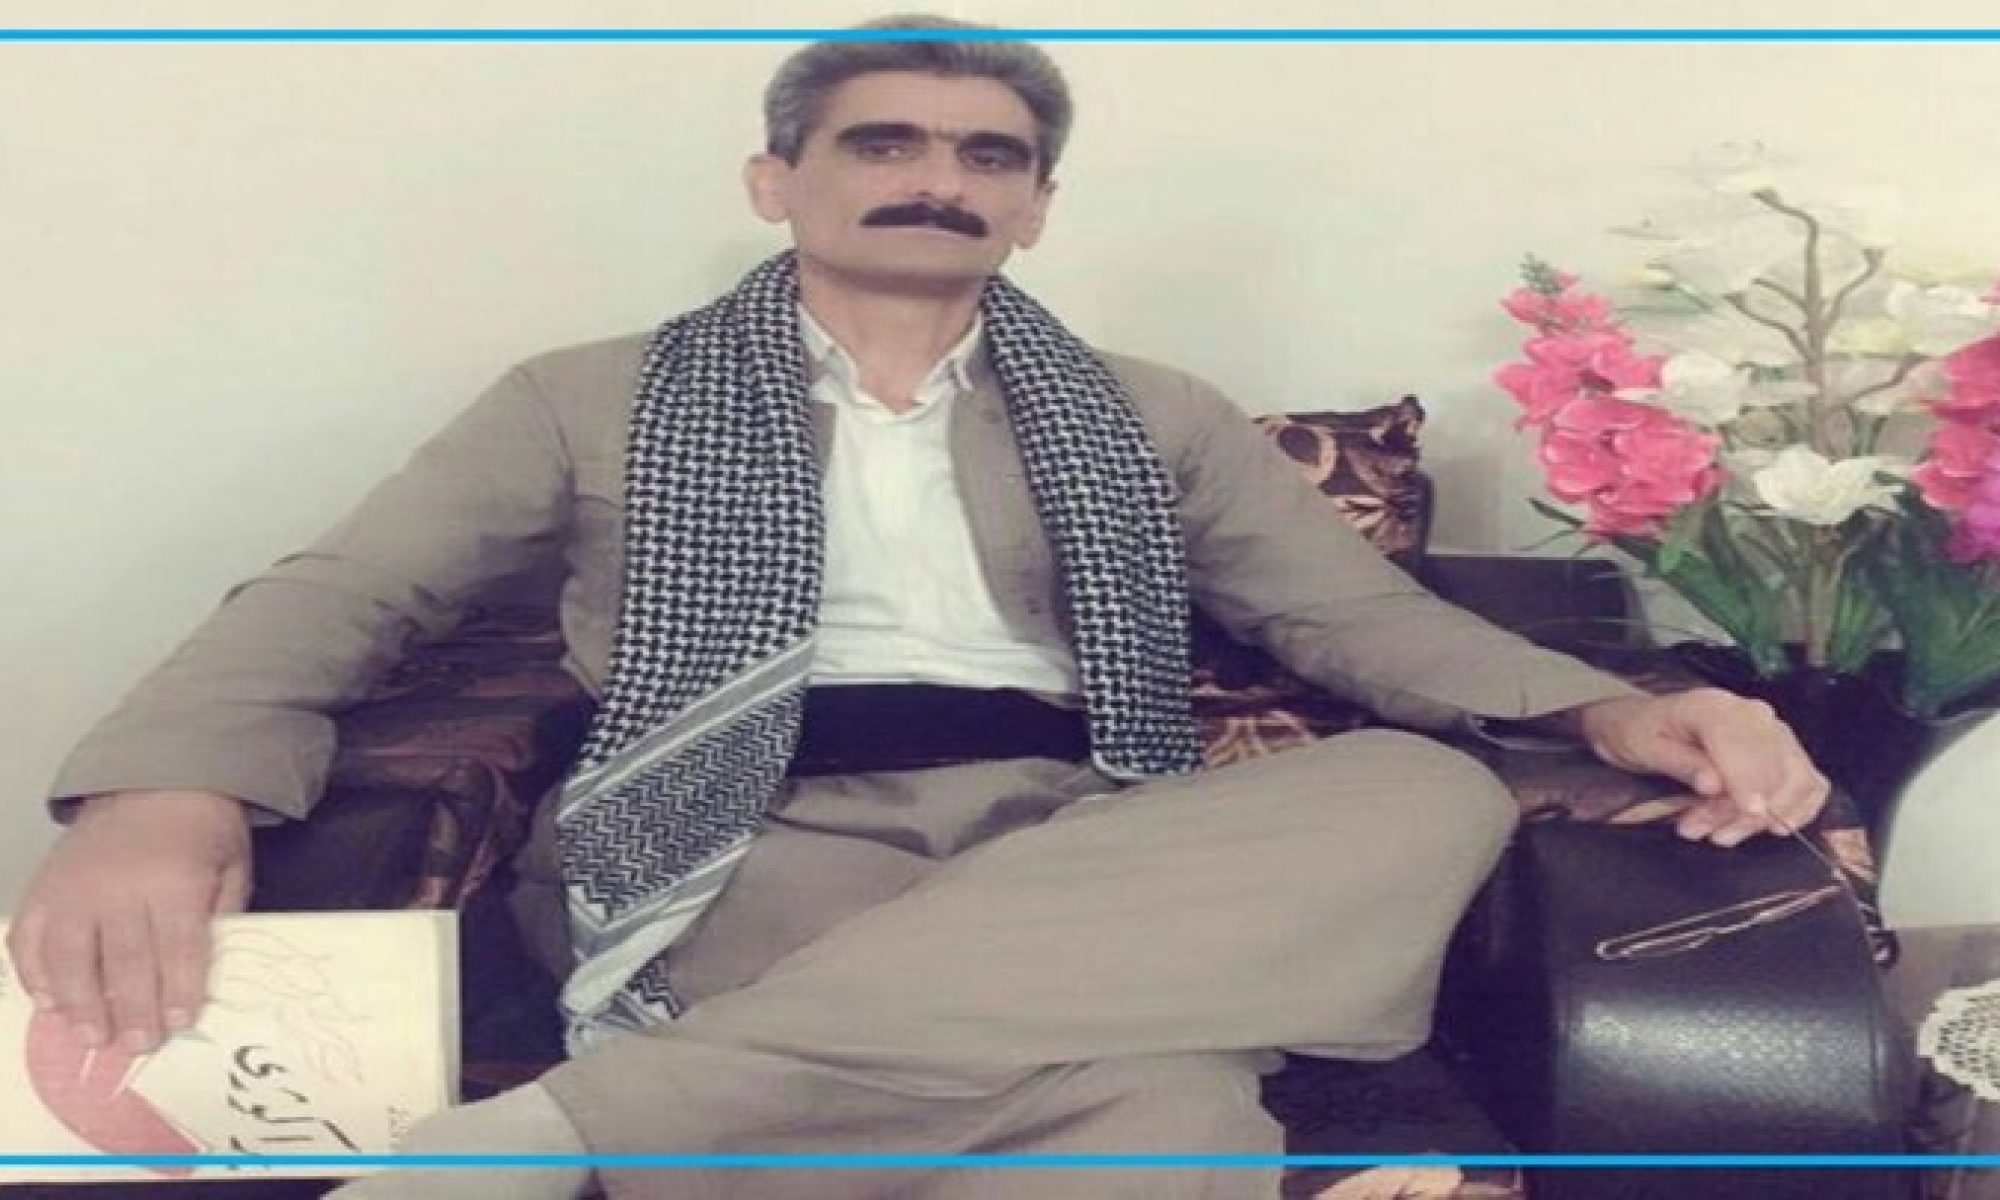 Kürdistaniler İran'da baskı altında, Seqiz'da bir kişi Kürt kıyafeti giydiği gerekçesiyle gözaltına alındı